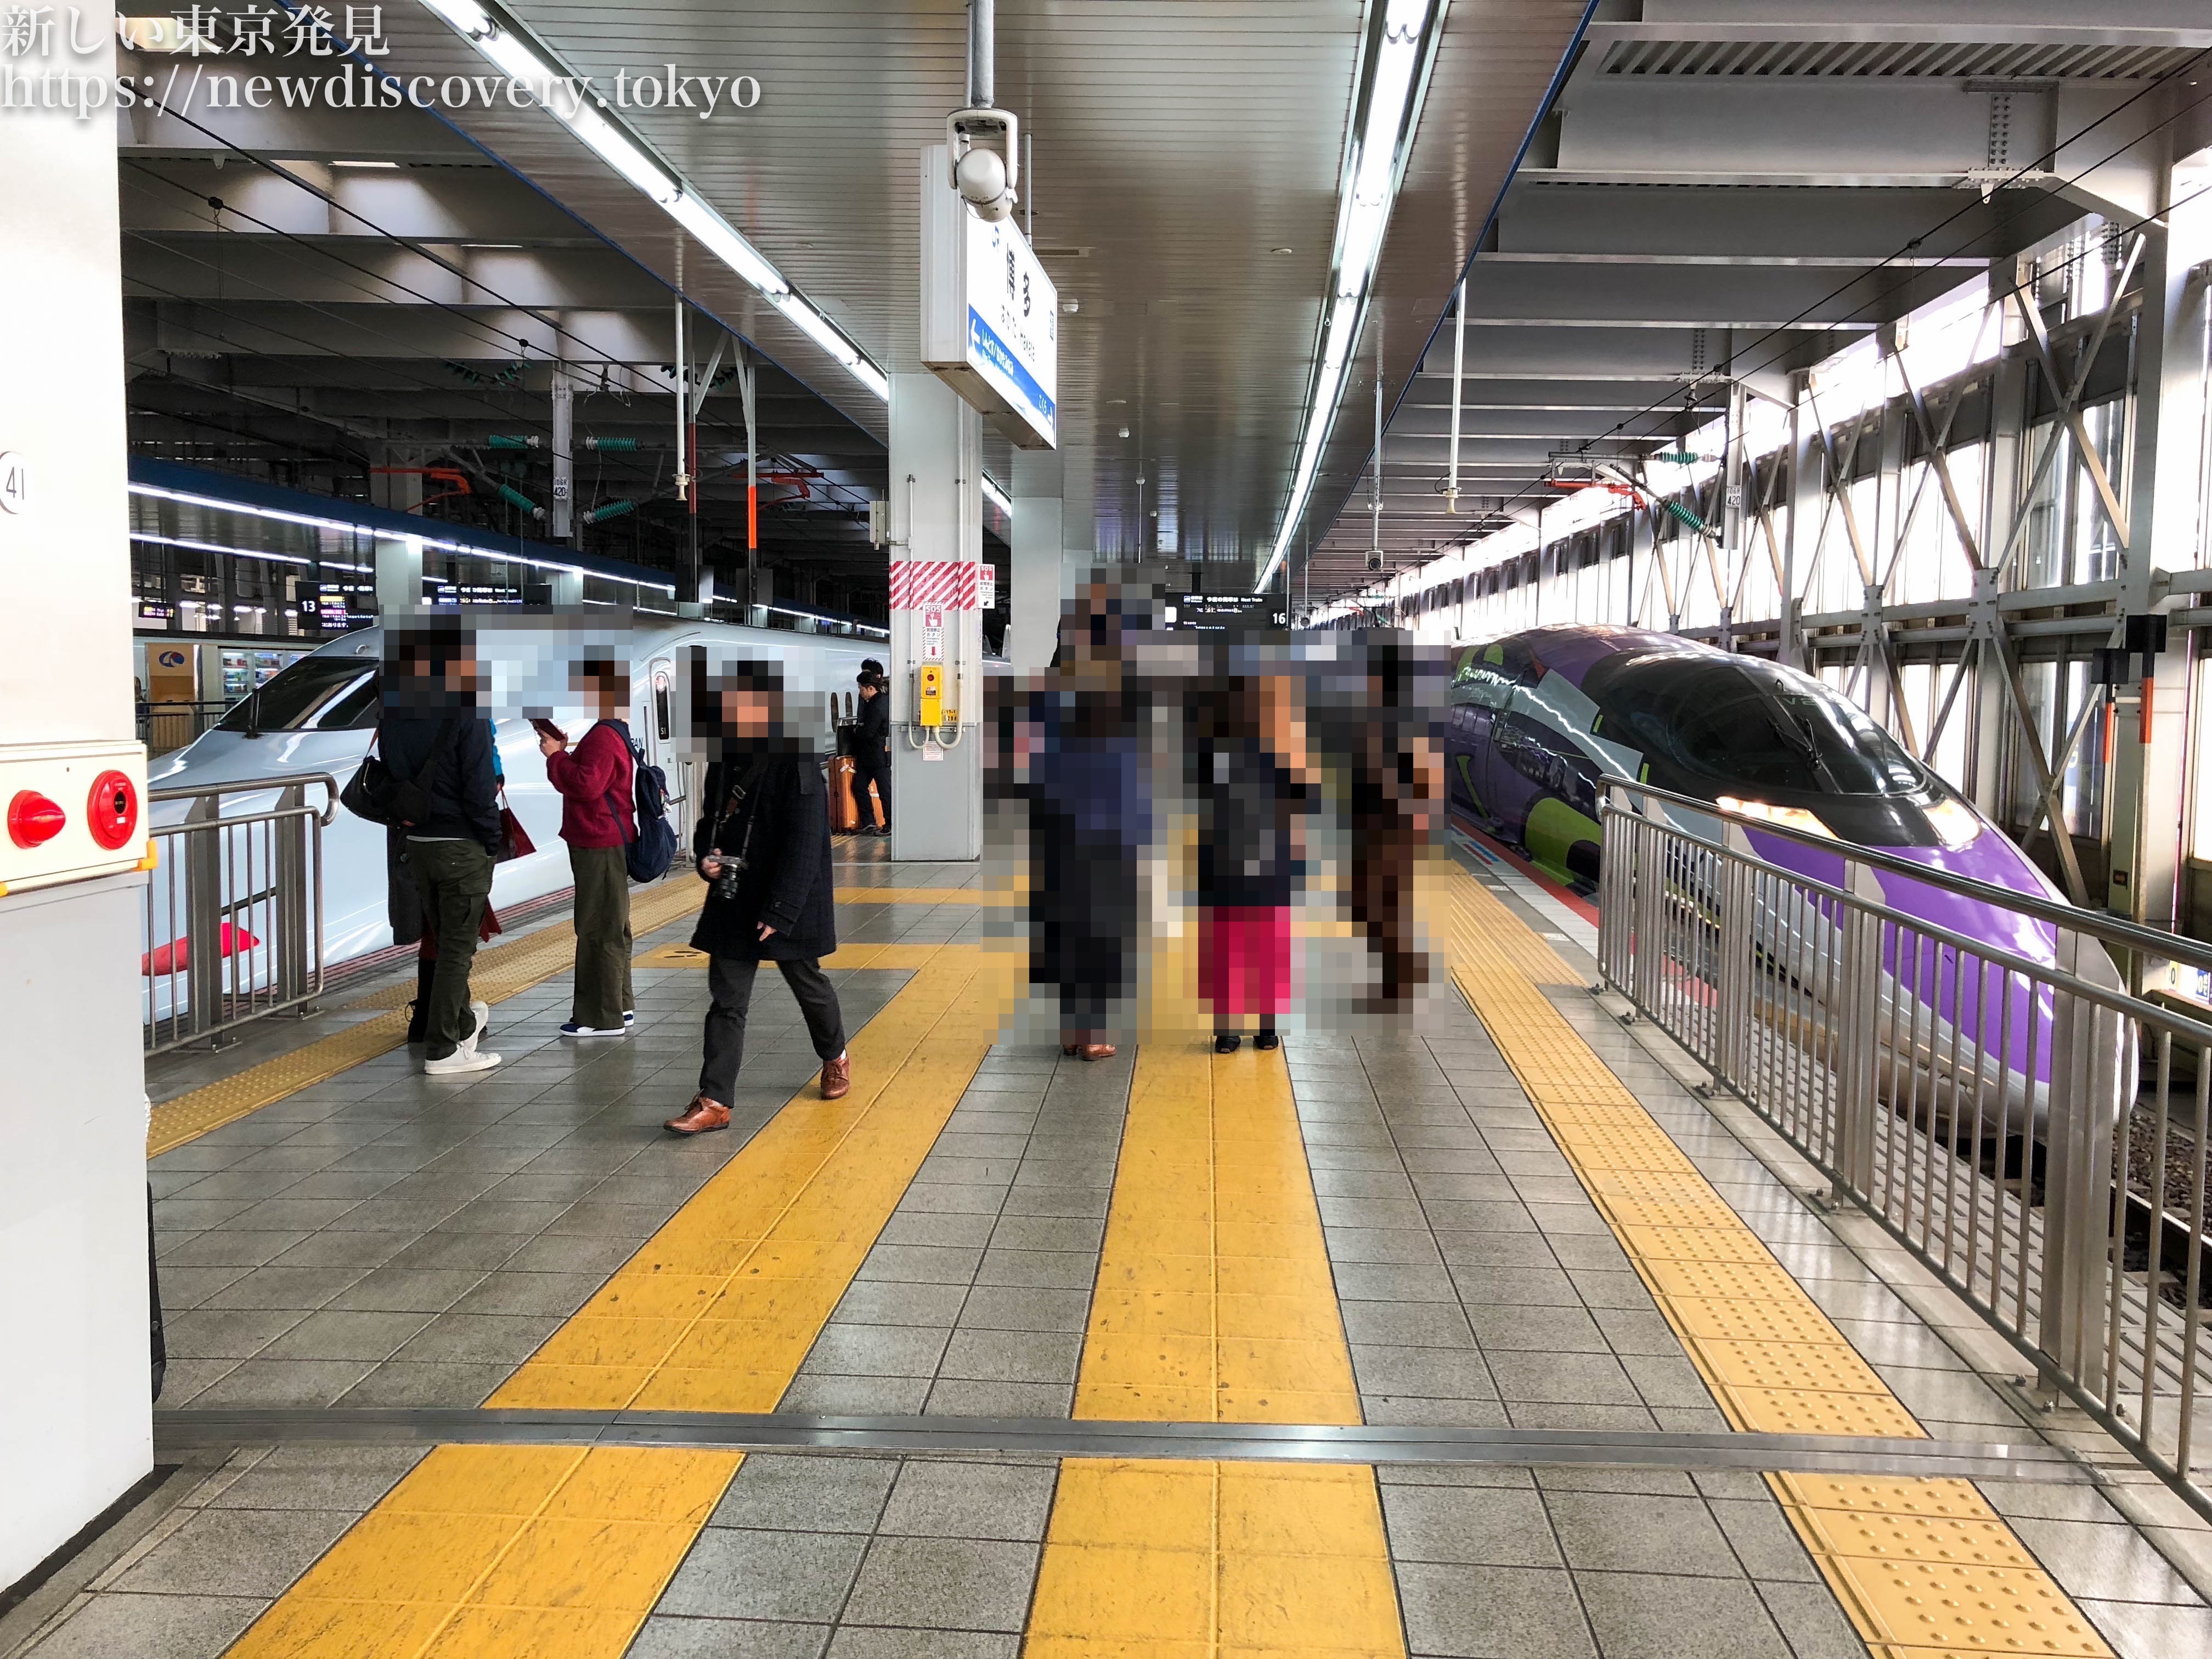 福岡市 博多駅周辺 で 電車好きな子供 を連れて行くべき子鉄スポット トレインビュー 7選をご紹介 子連れパパママを応援する情報チャンネル 新しい東京発見